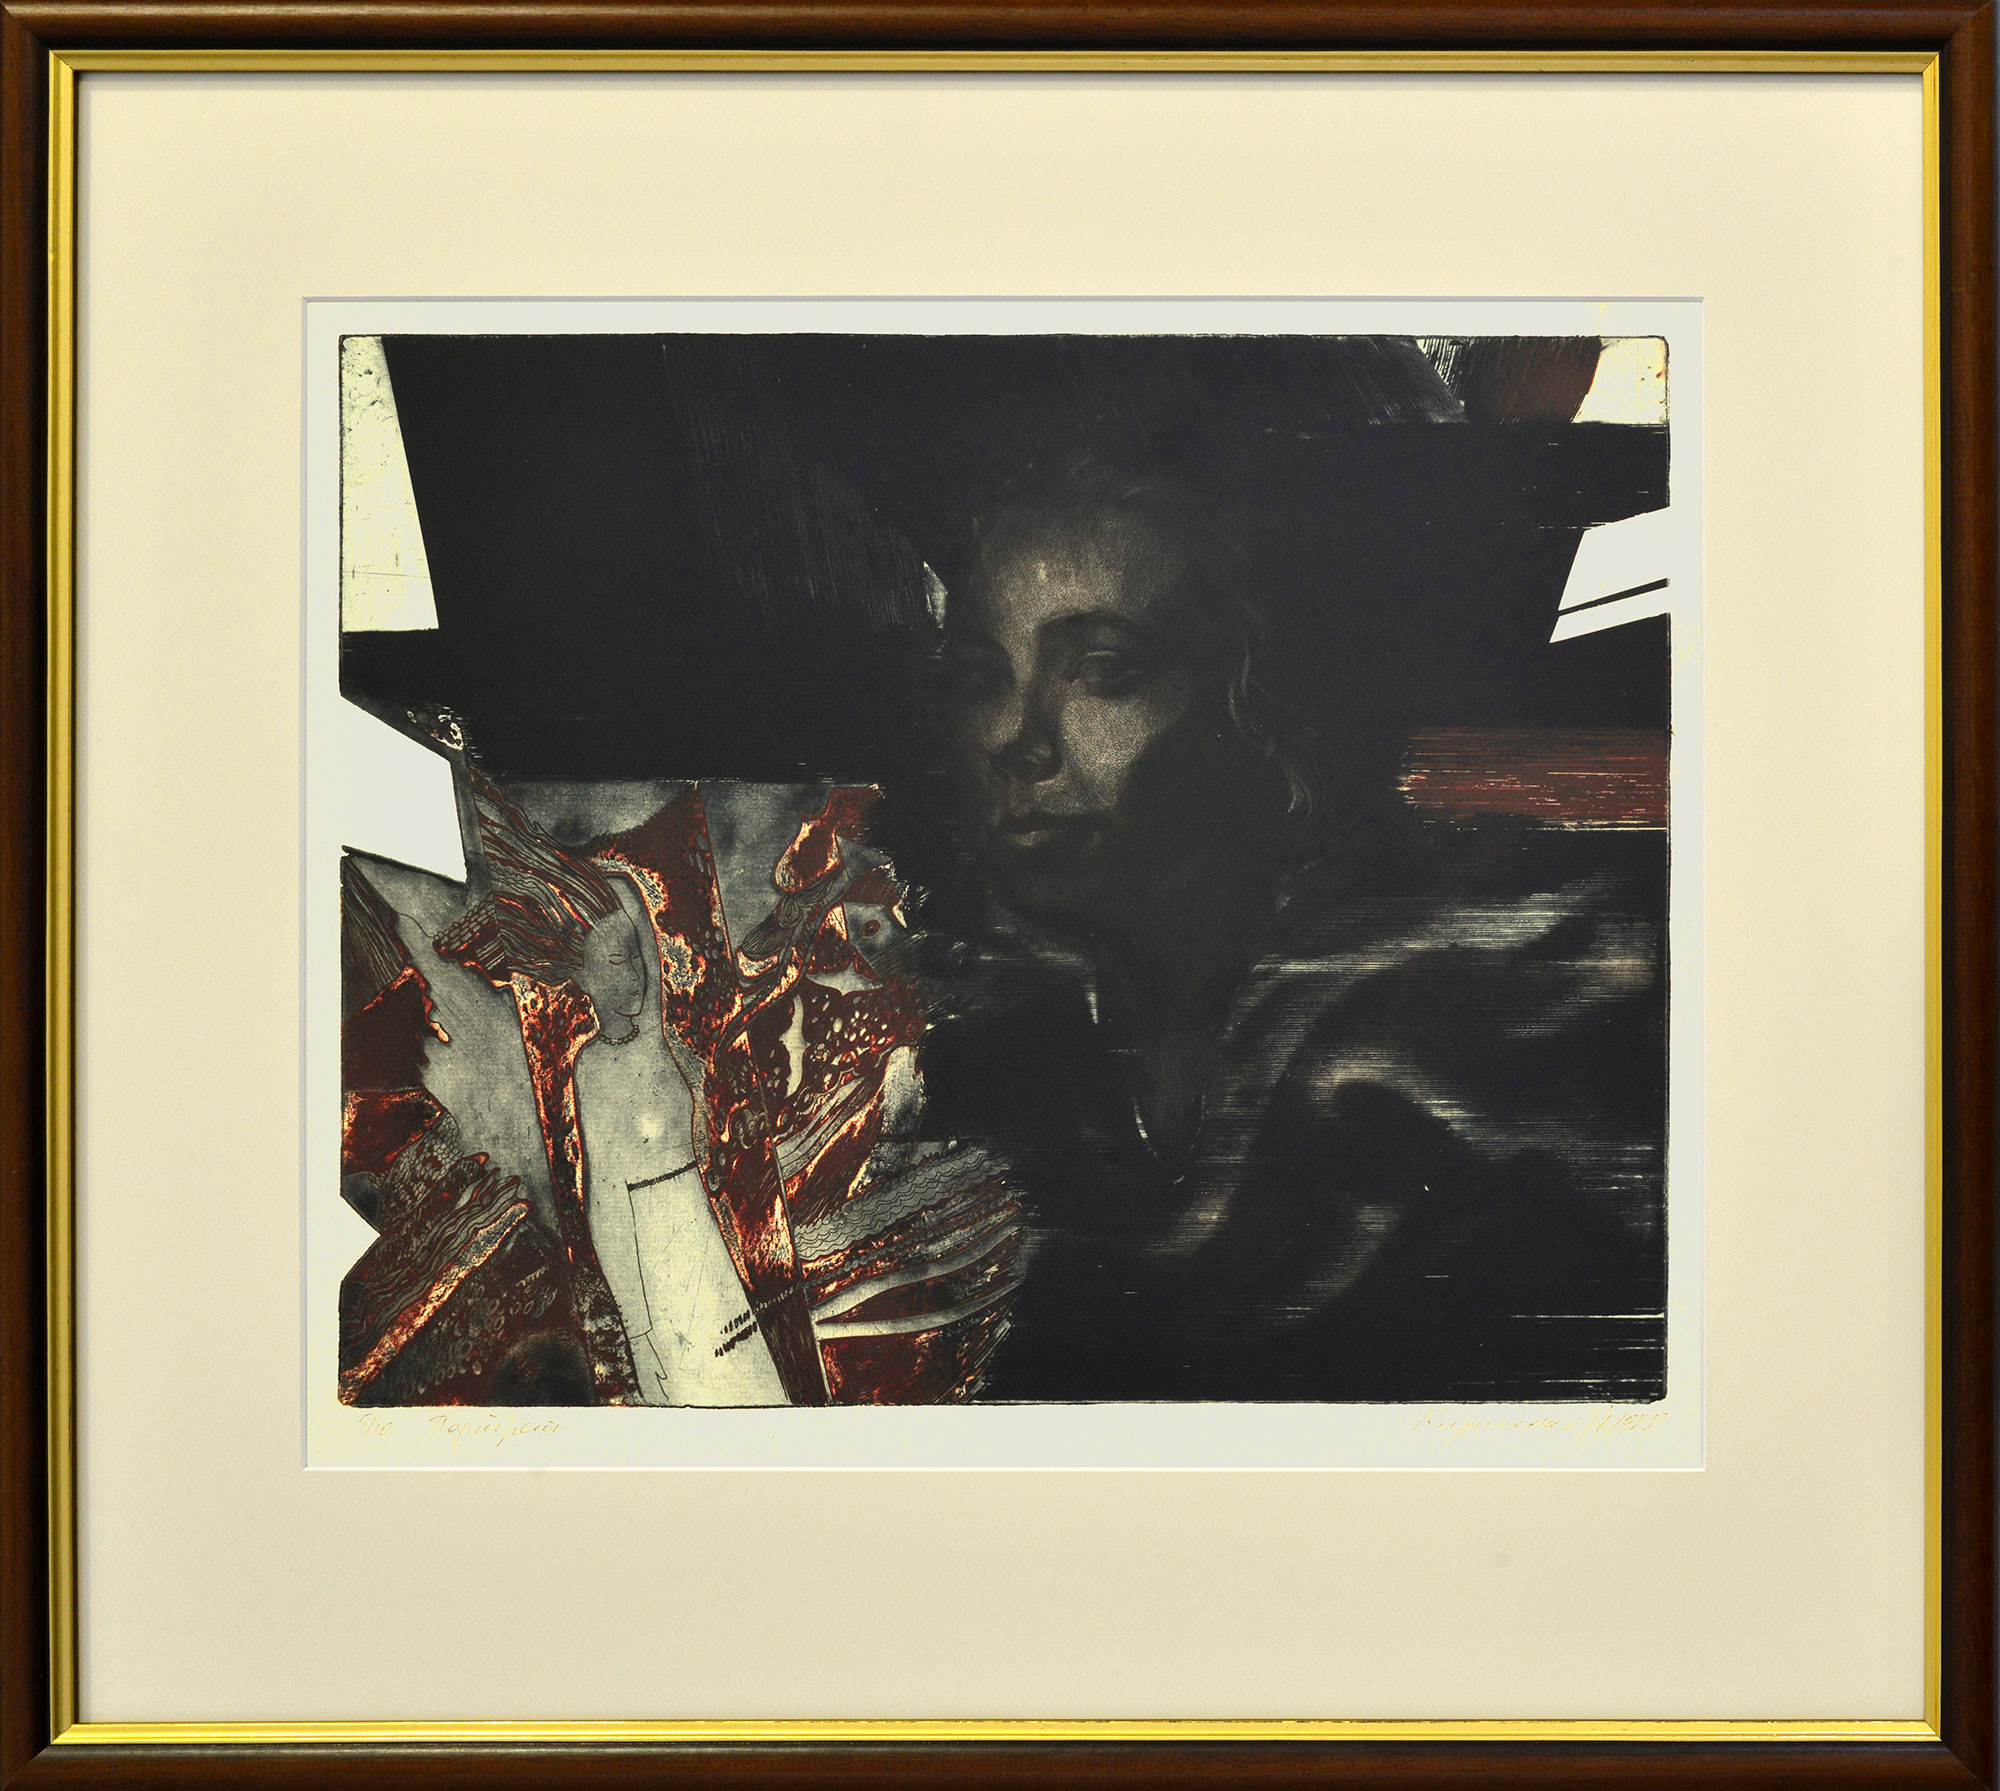 "Portrait", 1988 - 1